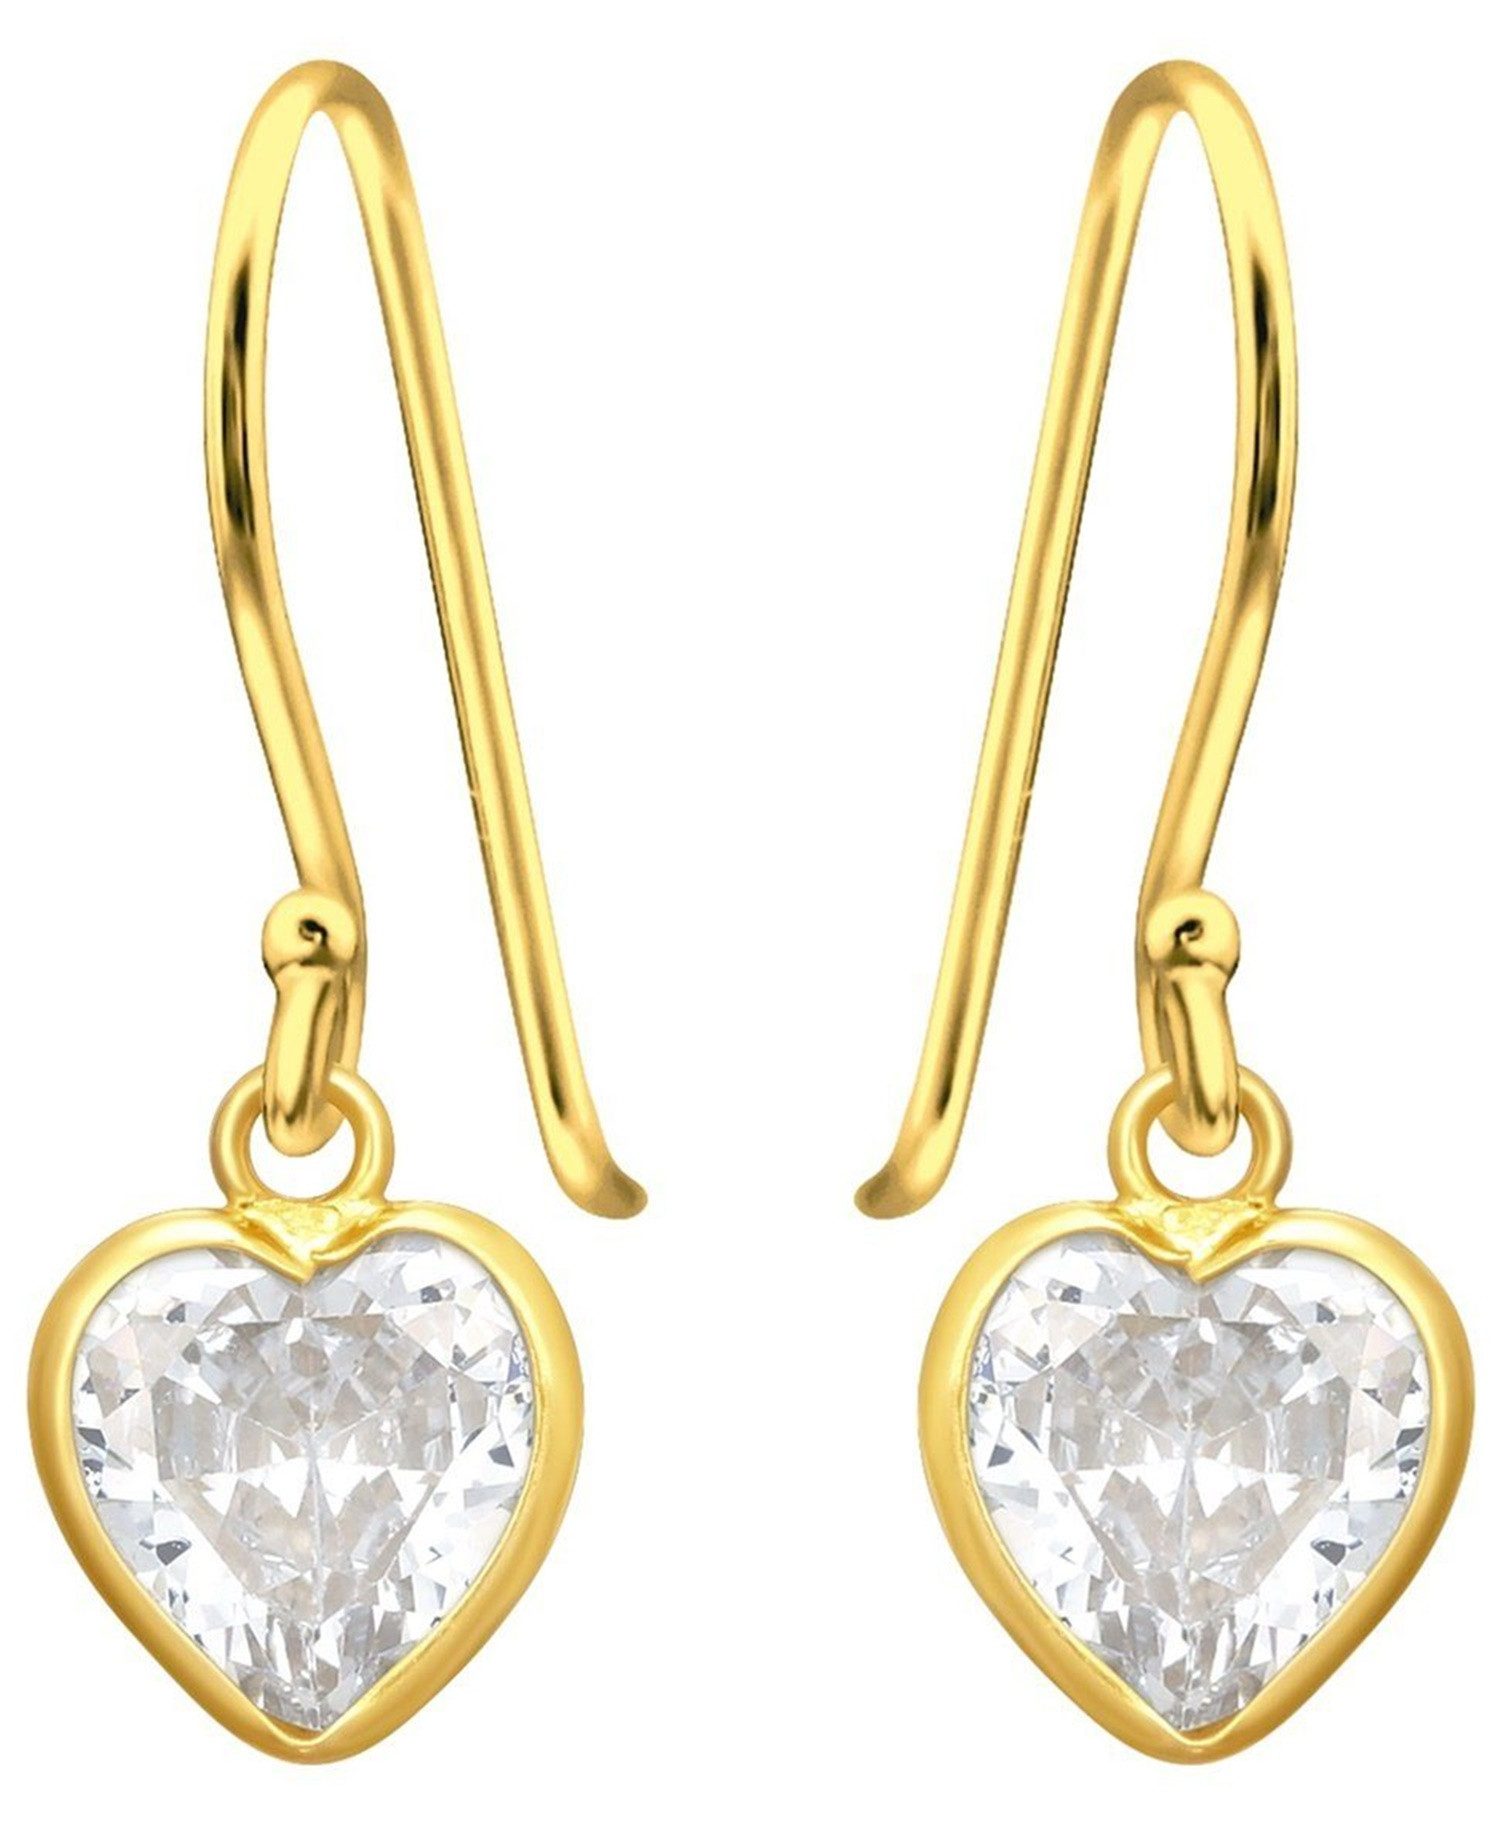 Goldene Hufeisen Paar Ohrhaken Herz Ohrringe aus 925 Sterling Silber Vergoldet mit Zirkonia Kristall (1 Paar, inkl. Etui), Anlaufgeschützt